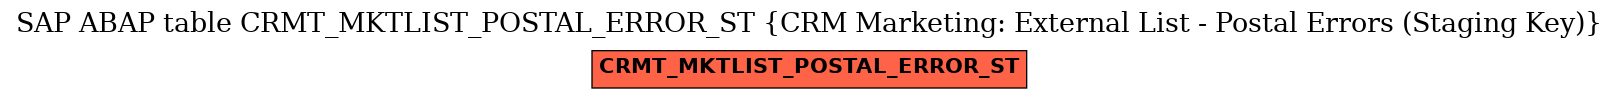 E-R Diagram for table CRMT_MKTLIST_POSTAL_ERROR_ST (CRM Marketing: External List - Postal Errors (Staging Key))